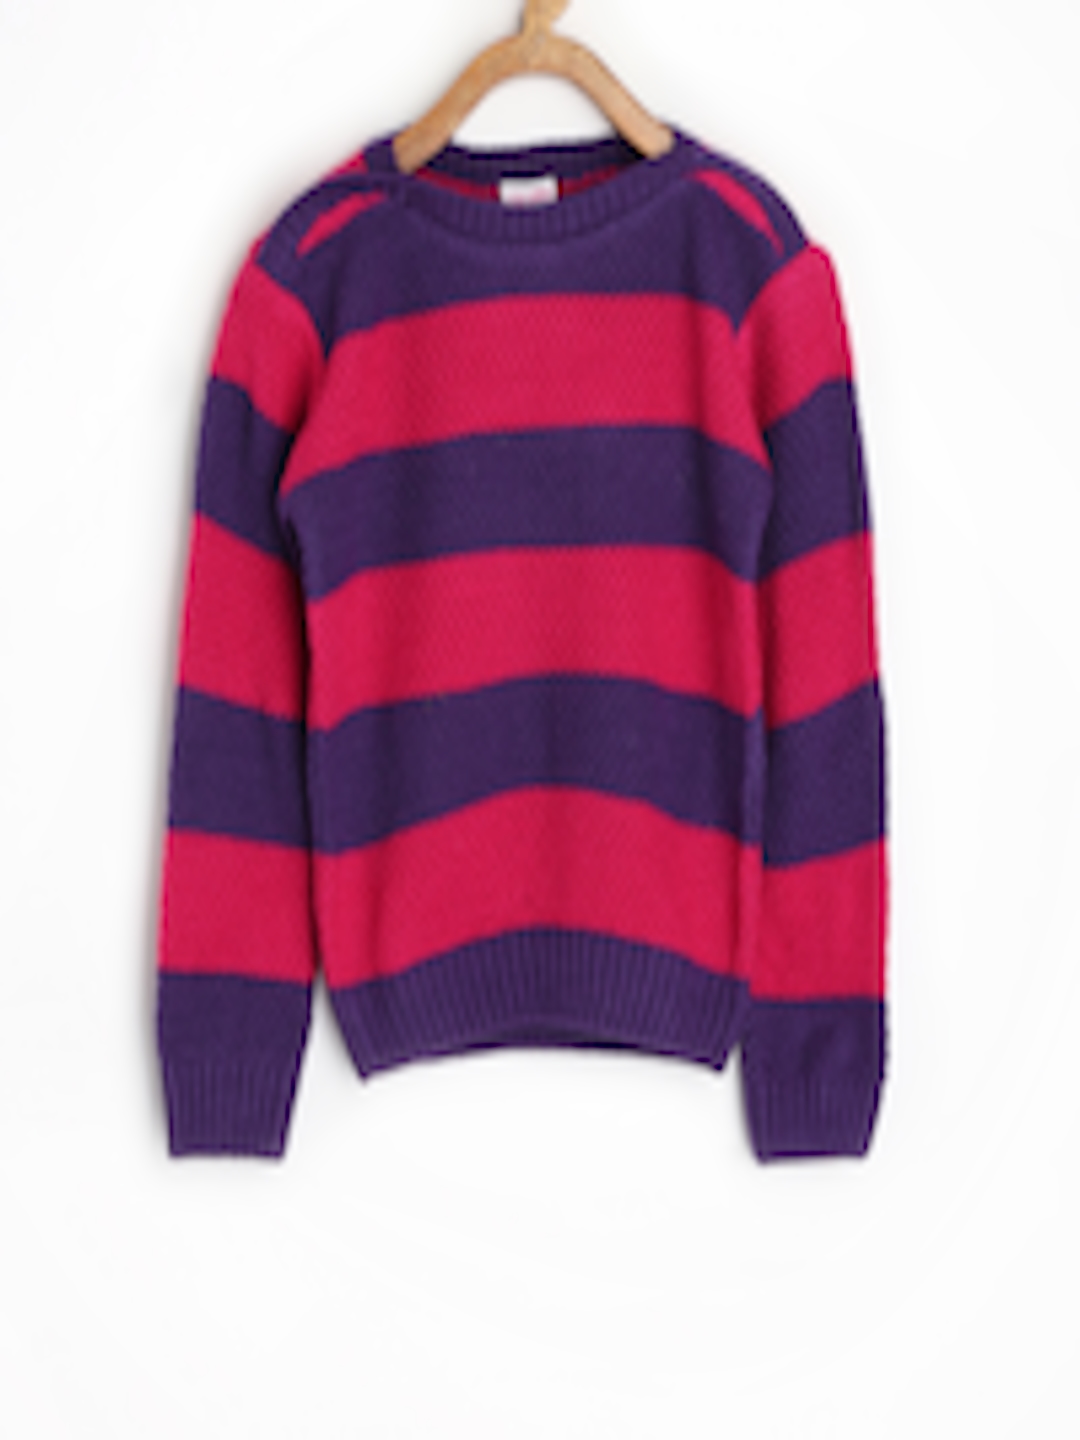 Buy FS Mini Klub Girls Pink & Purple Striped Sweater - Sweaters ...